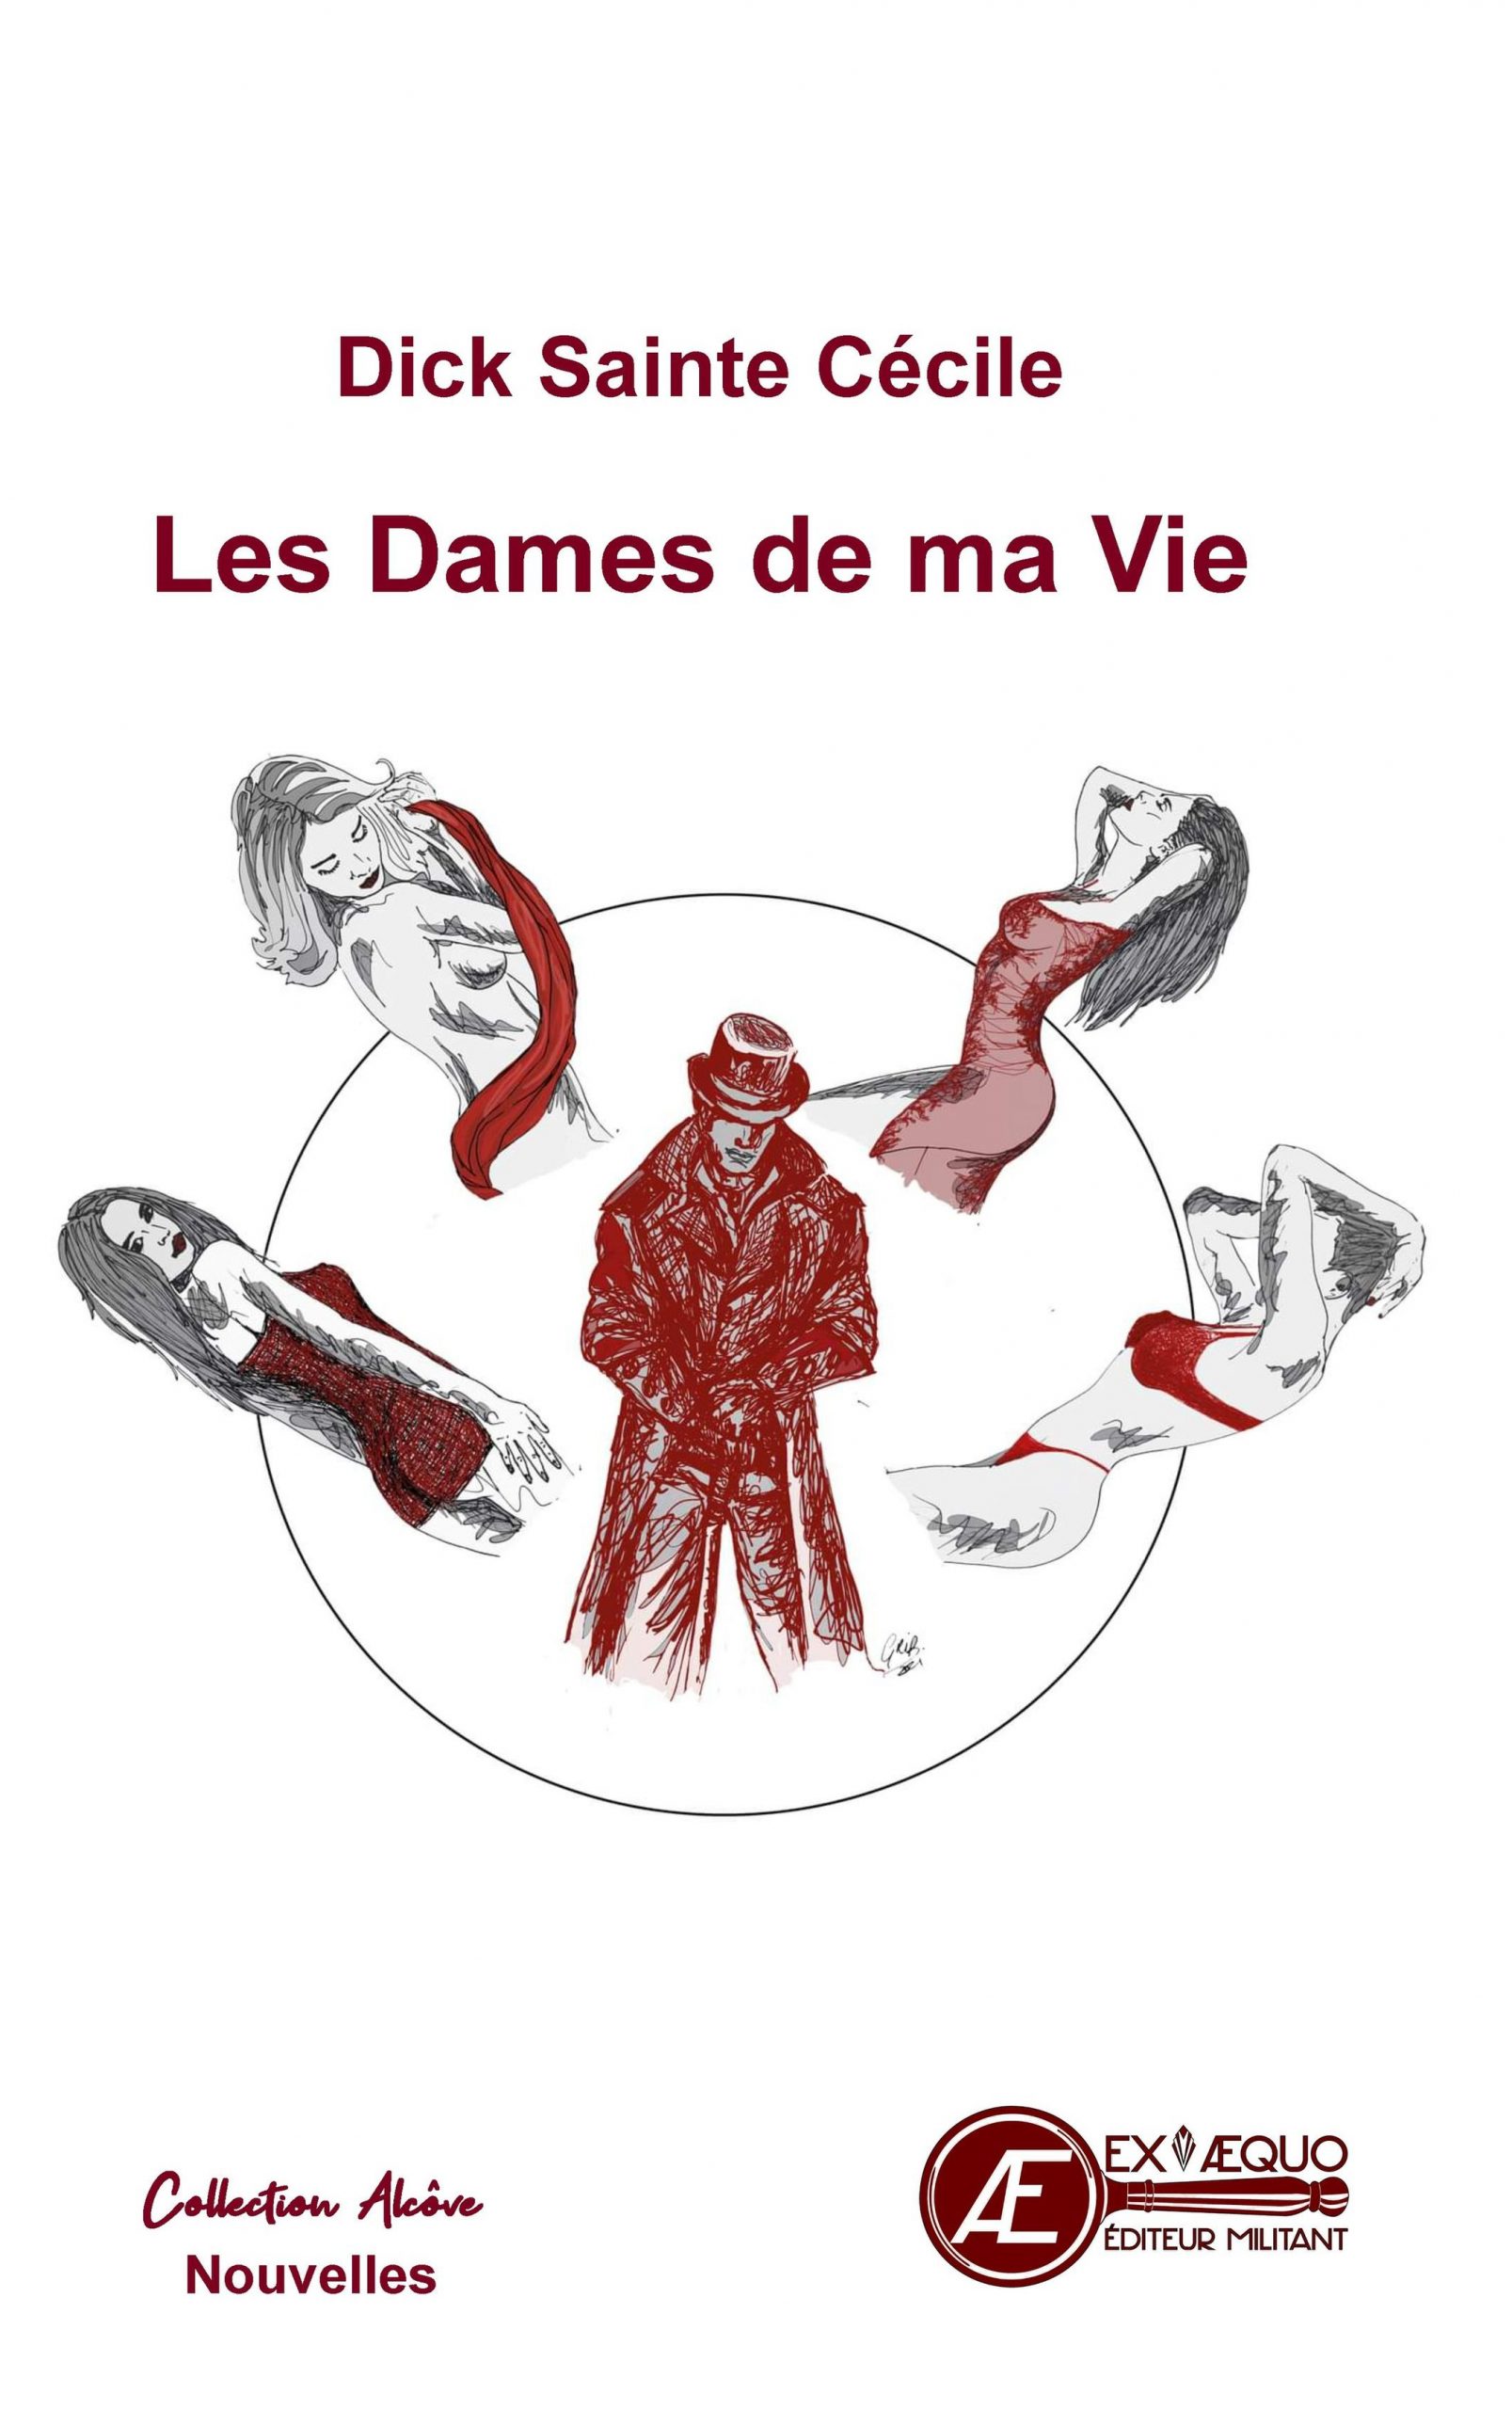 You are currently viewing Les dames de ma vie, de Dick Sainte Cécile